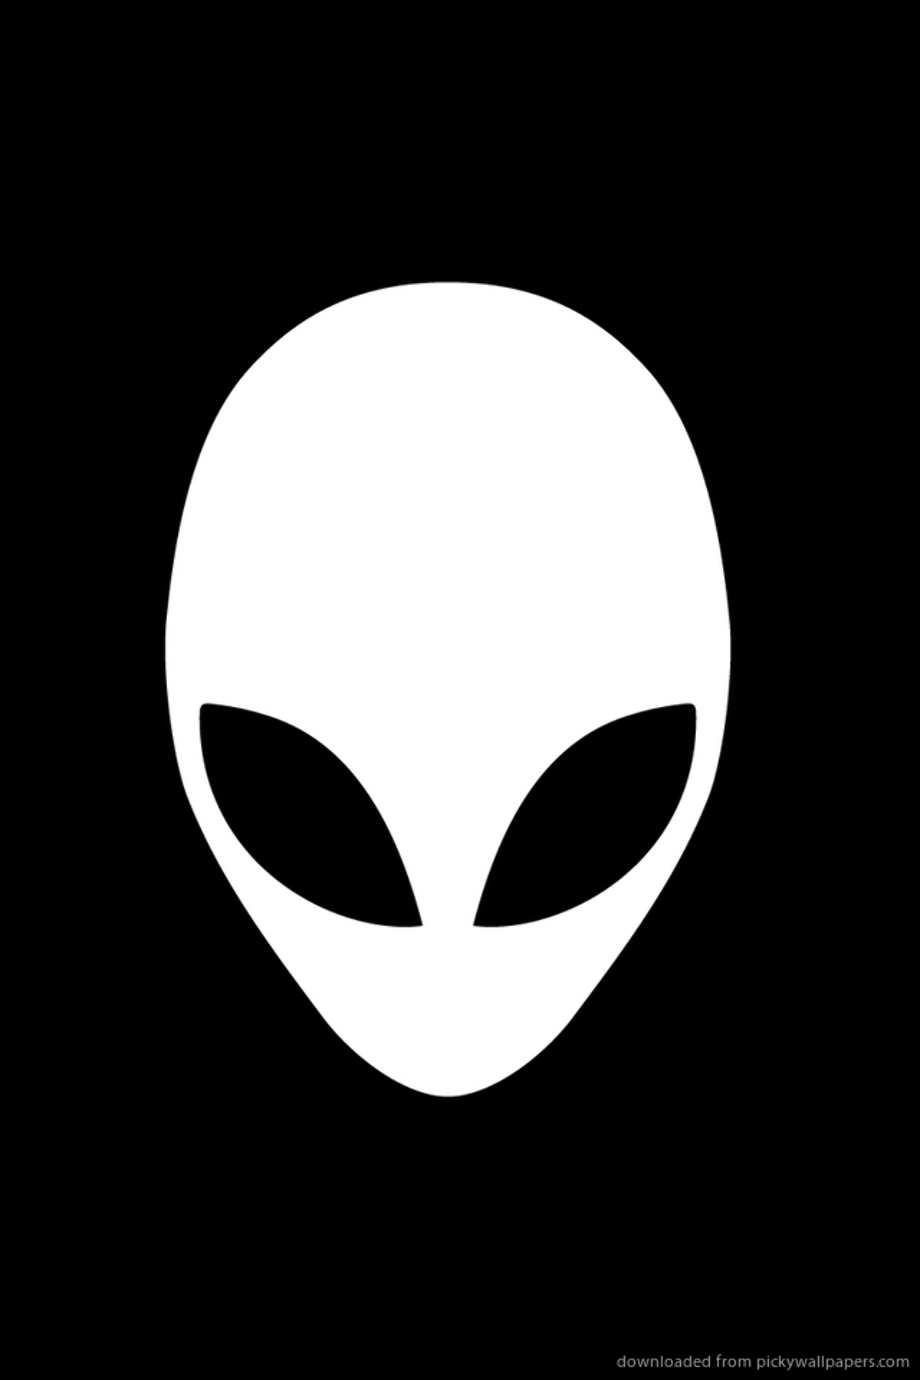 alienware logo iphone